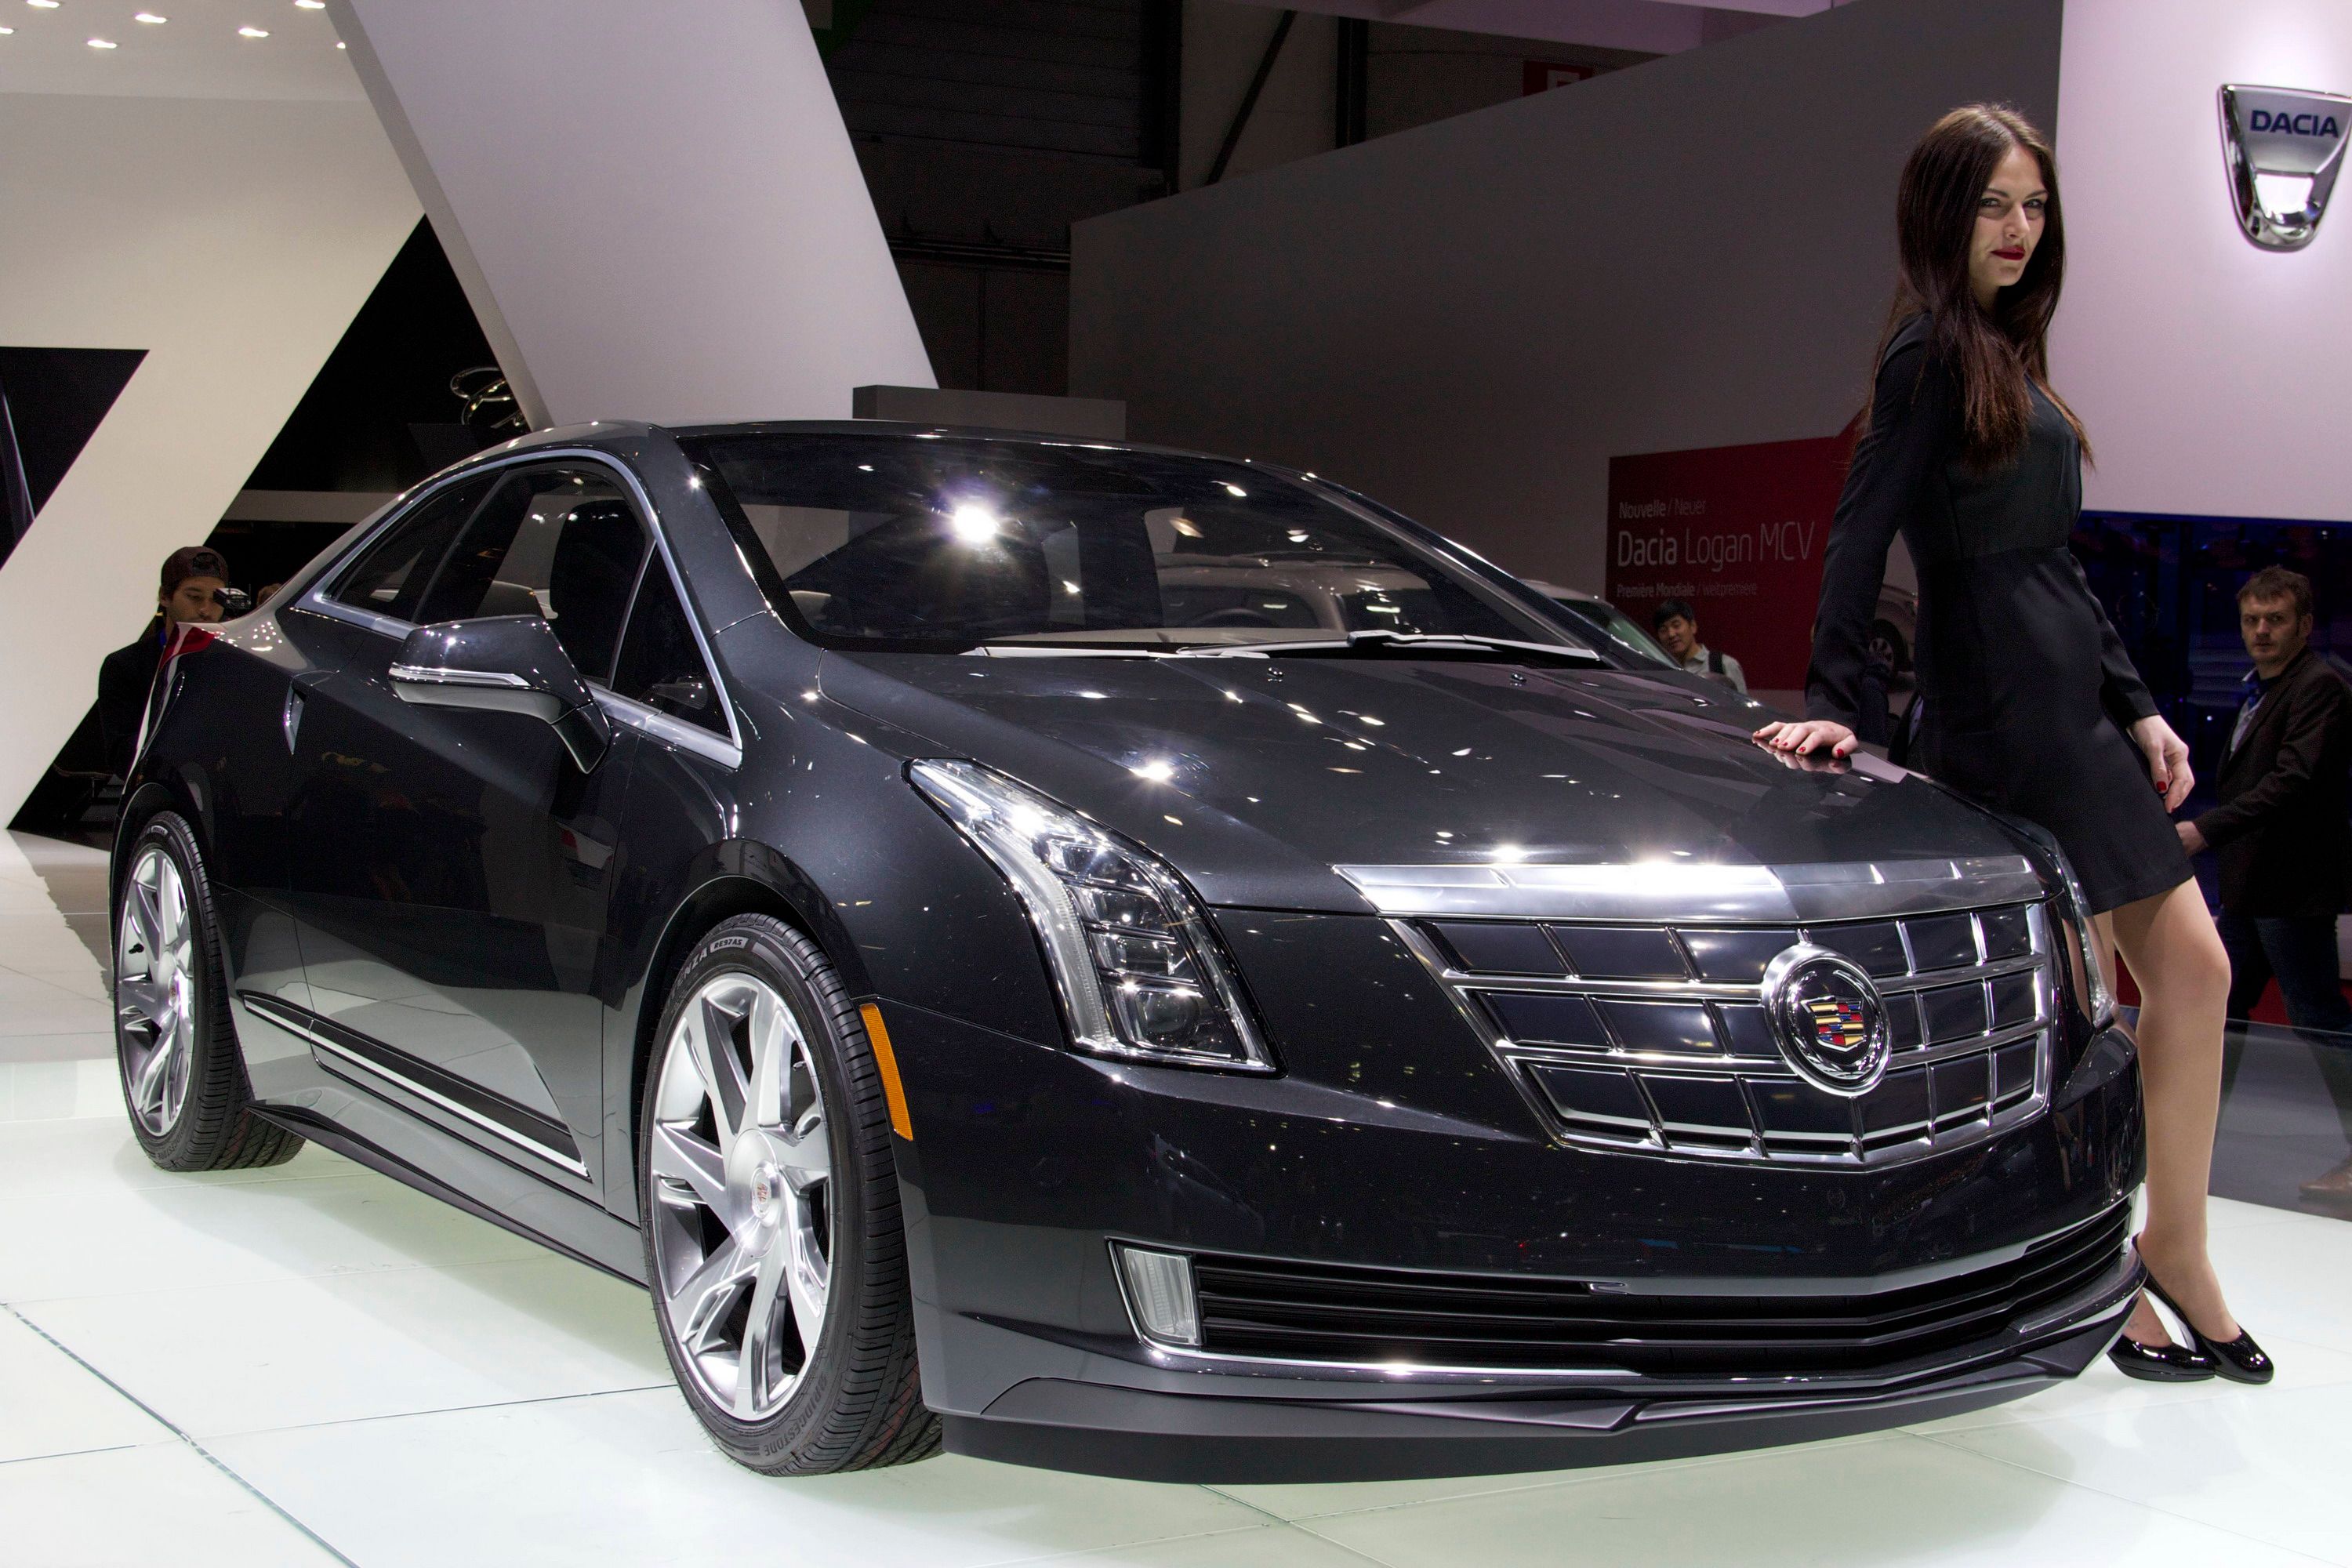 2014 Cadillac ELR